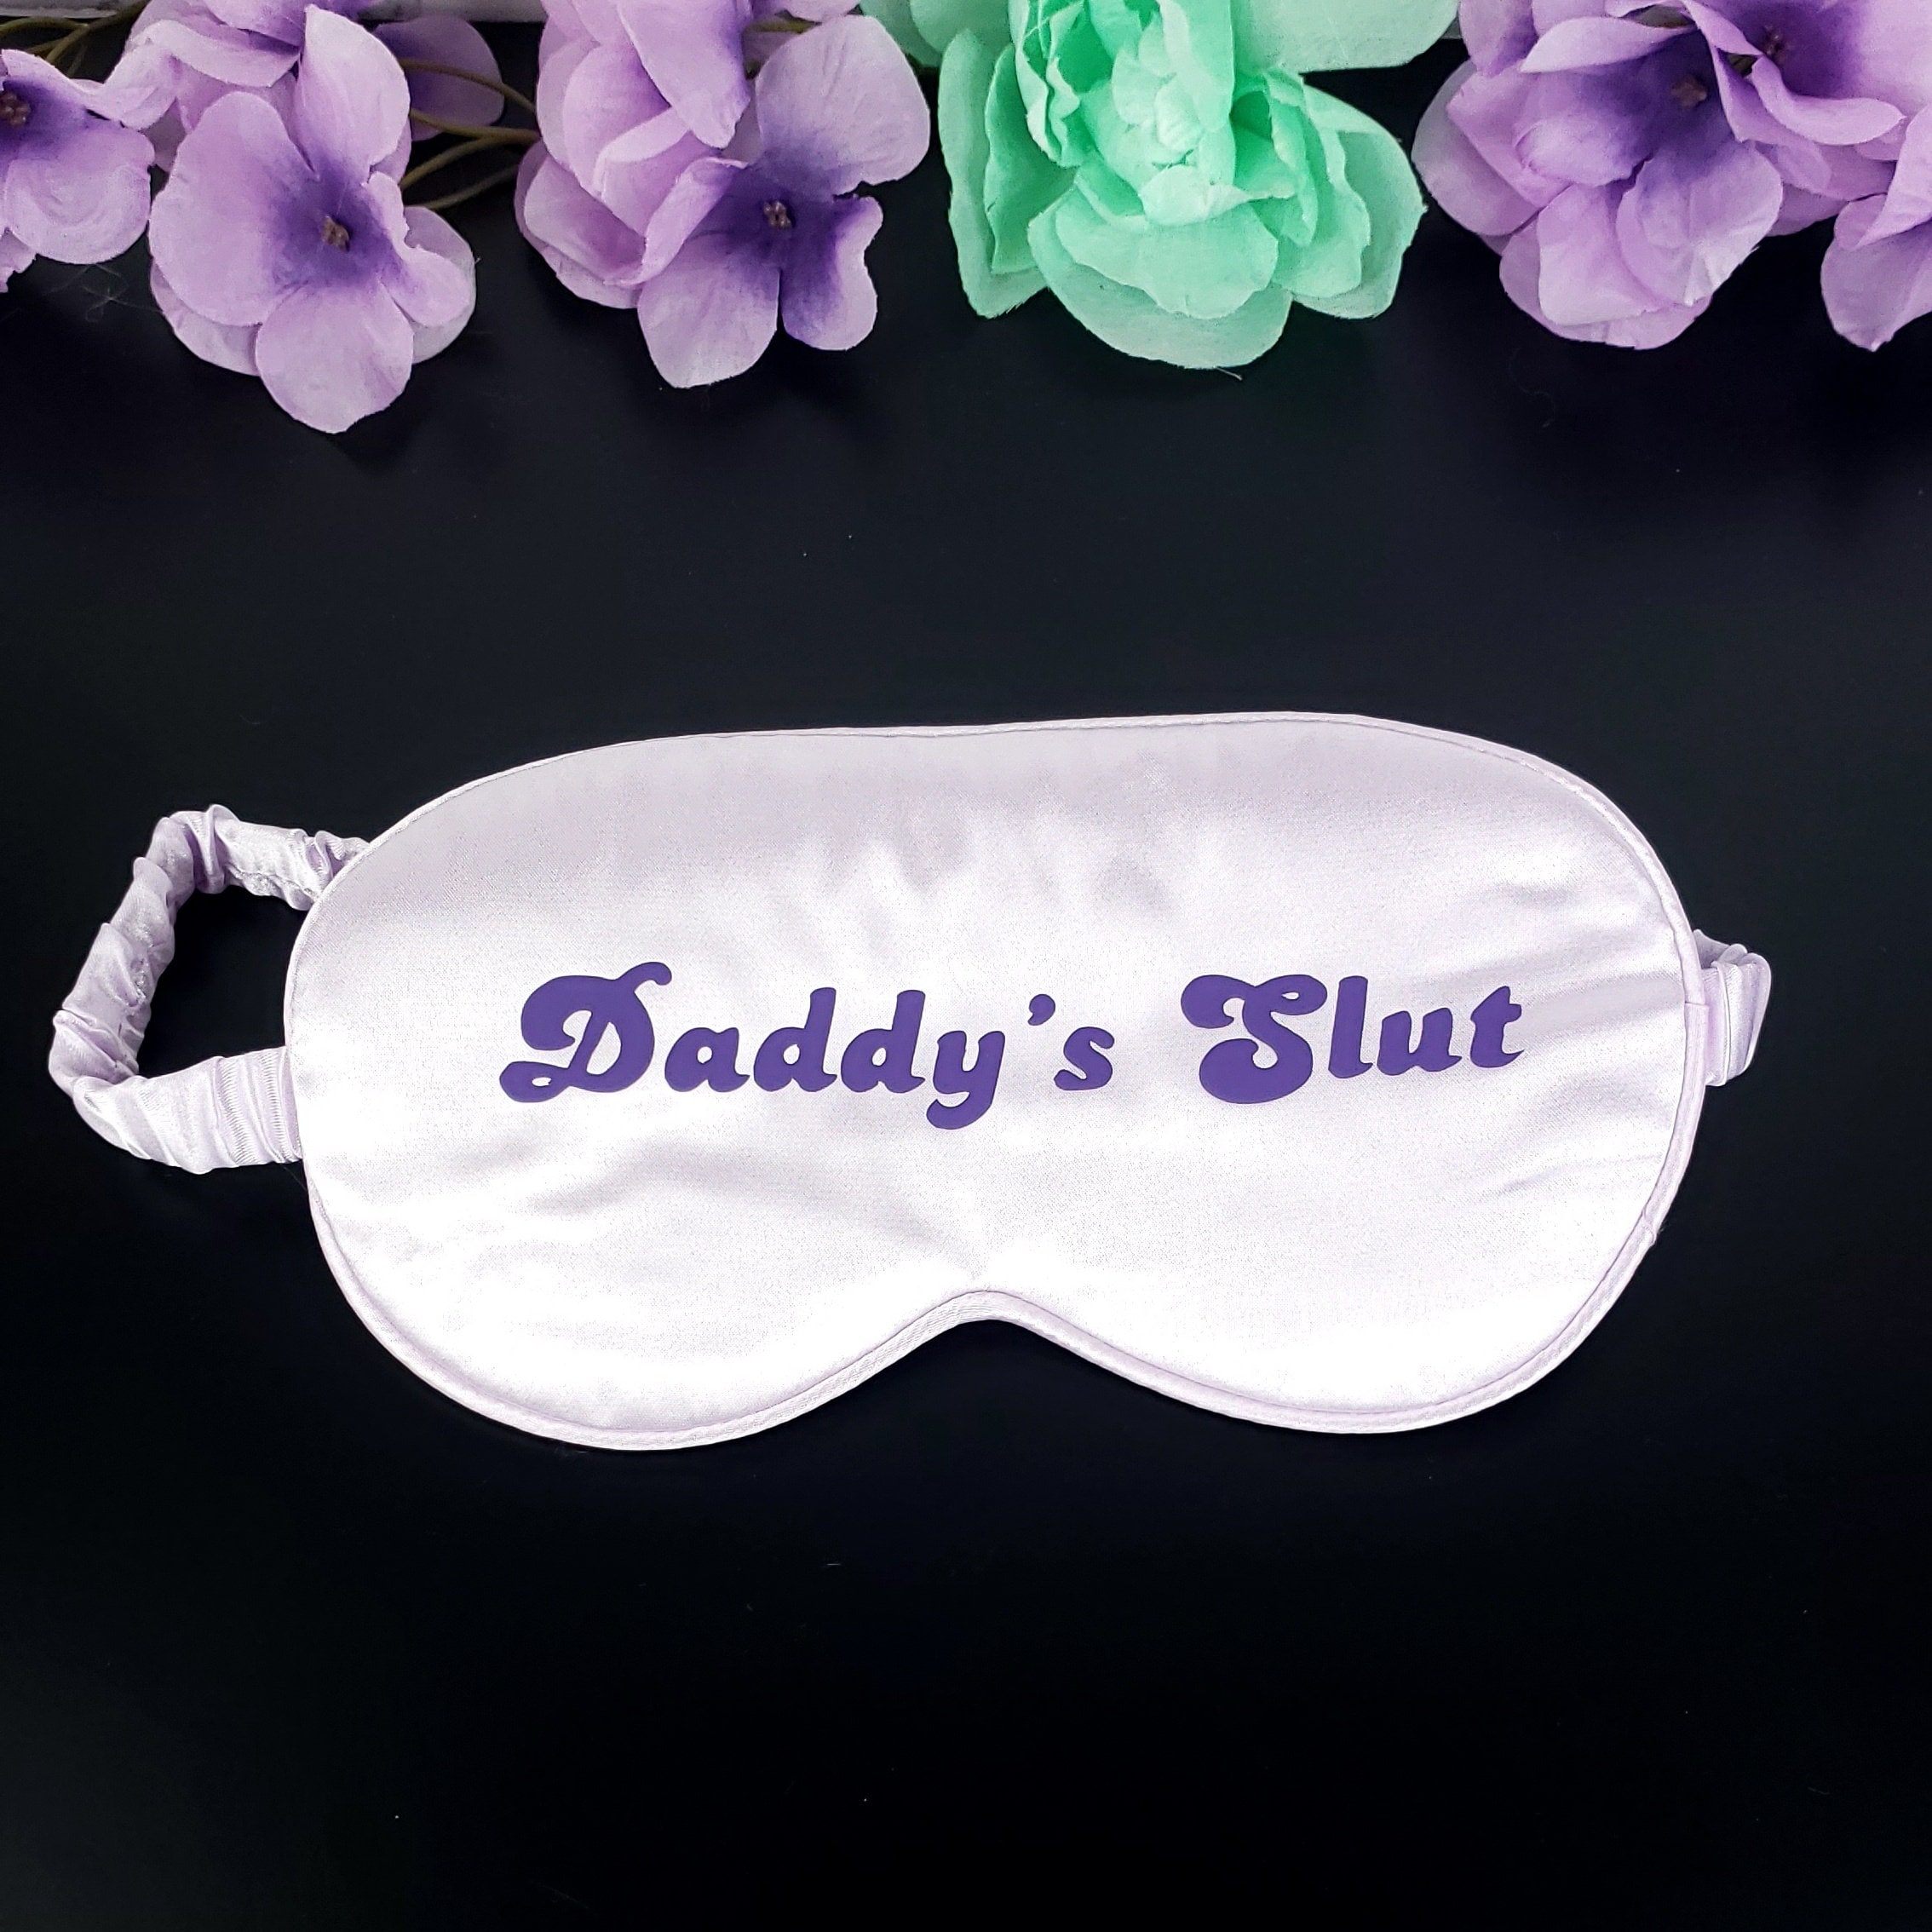 Daddys Slut DDLG Blindfold BDSM Bondage Gear Blindfold pic